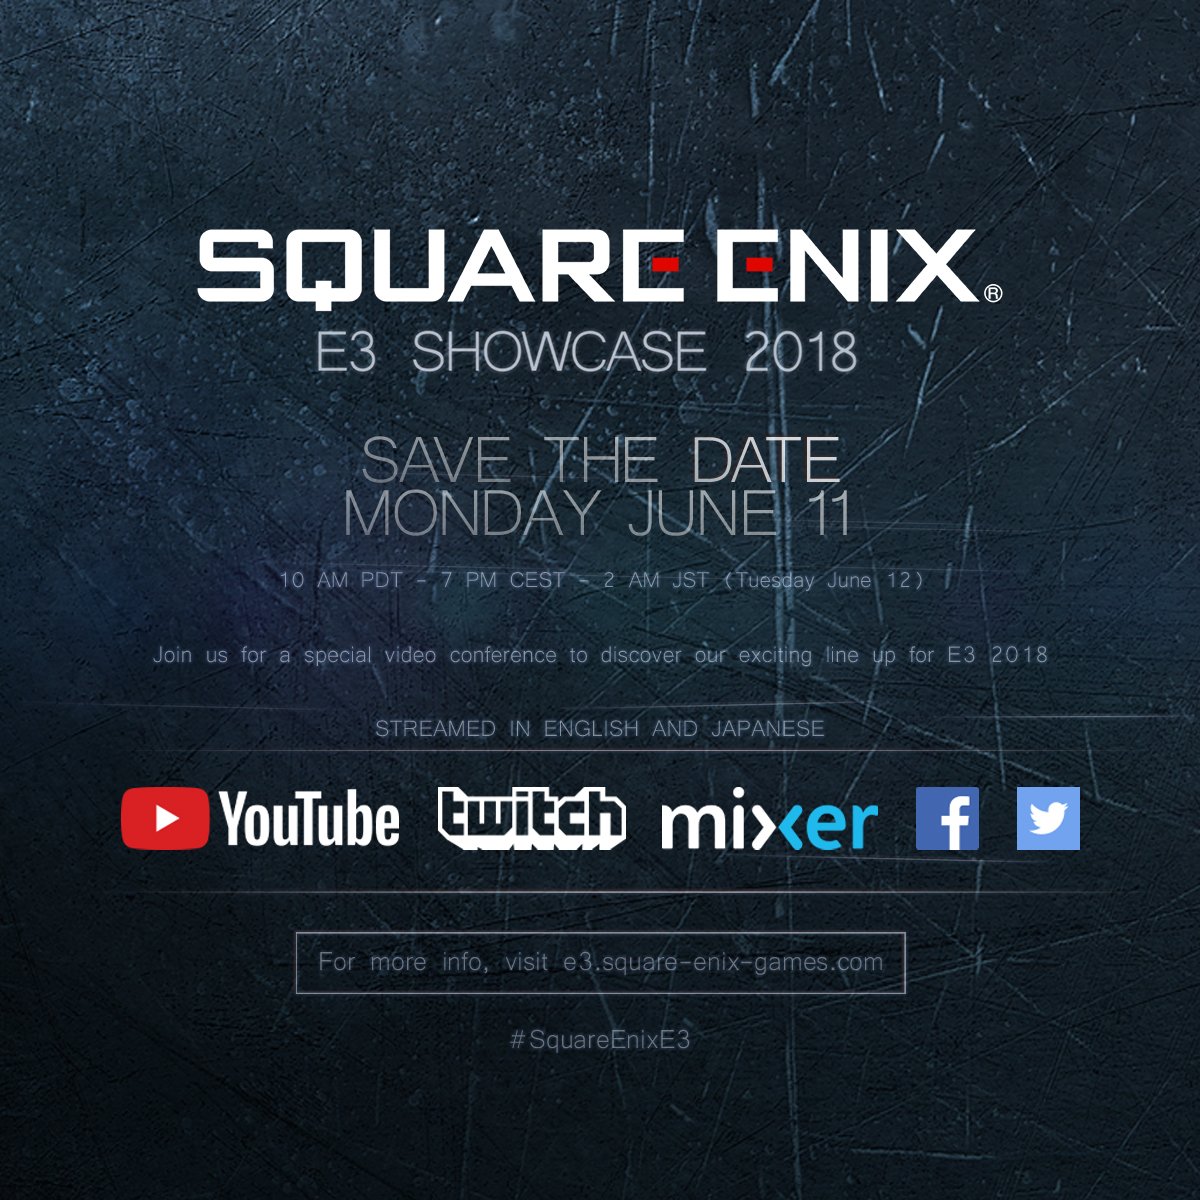 Square Enix E3 Showcase 2018